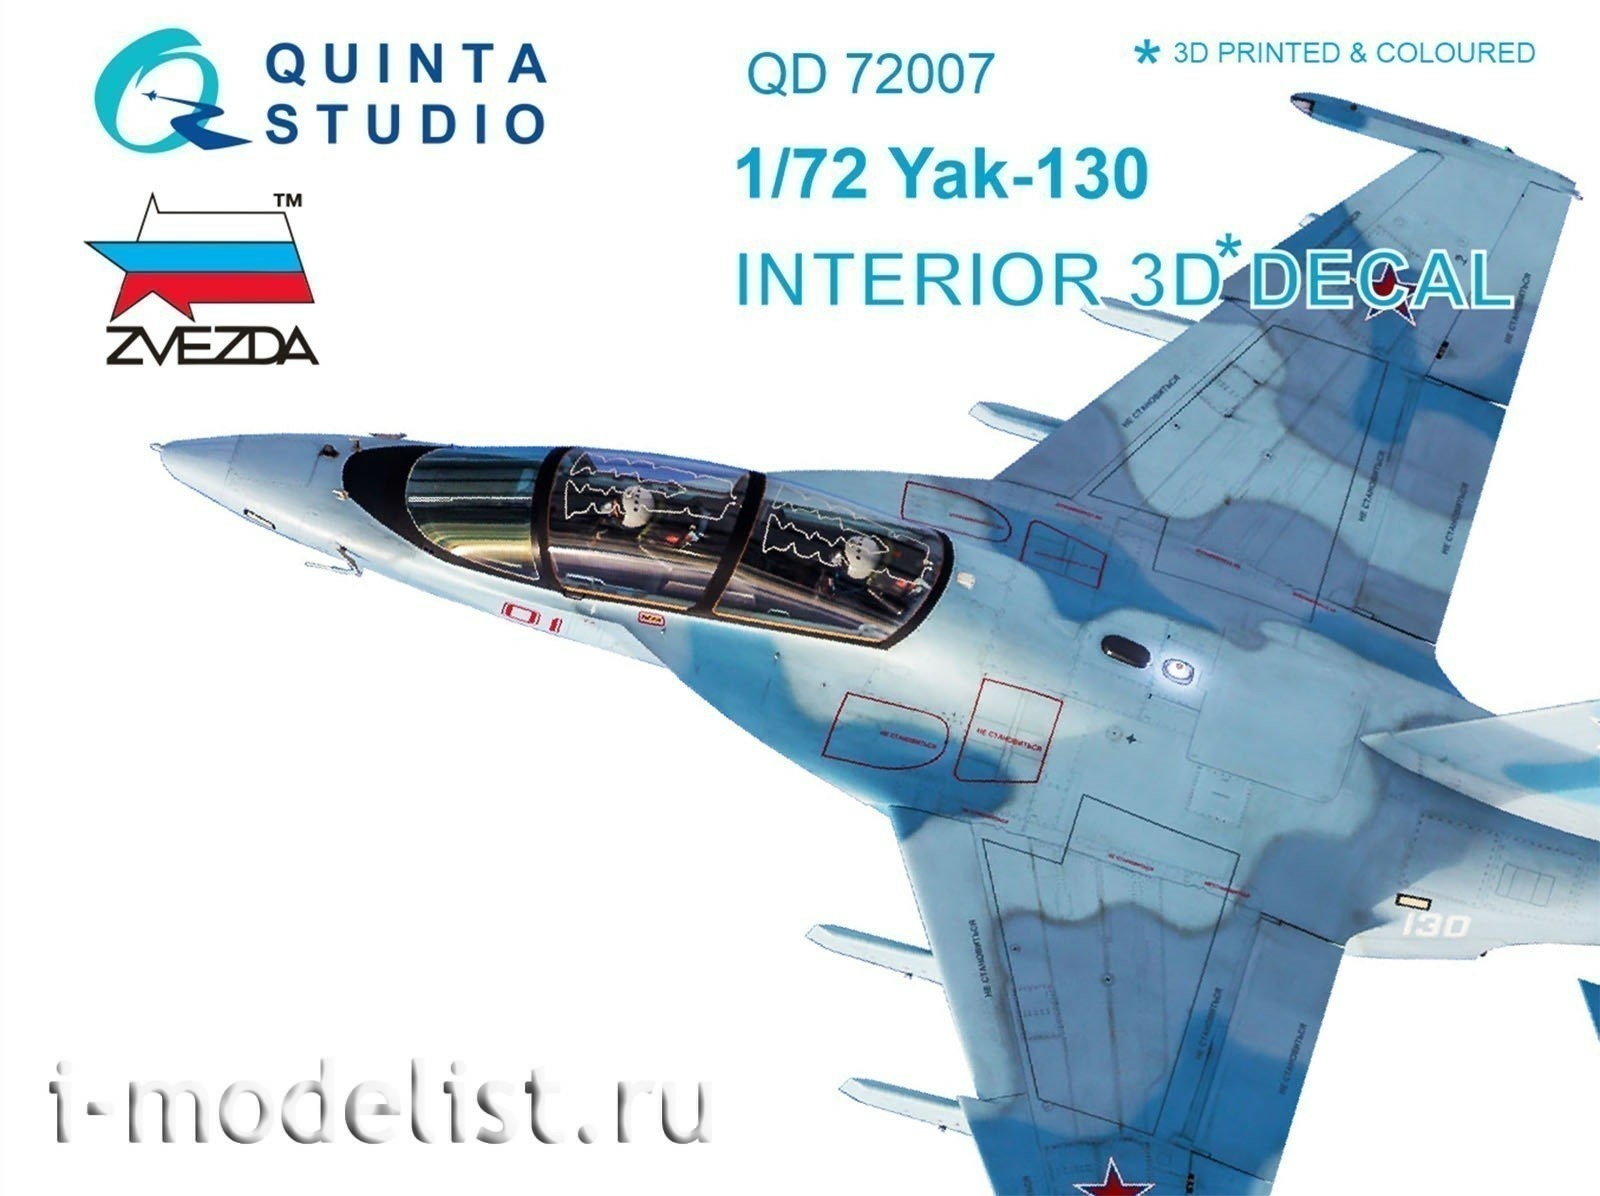 QD72007 Quinta Studio 1/72 3D Декаль интерьера кабины Як-130 (для модели Звезда)